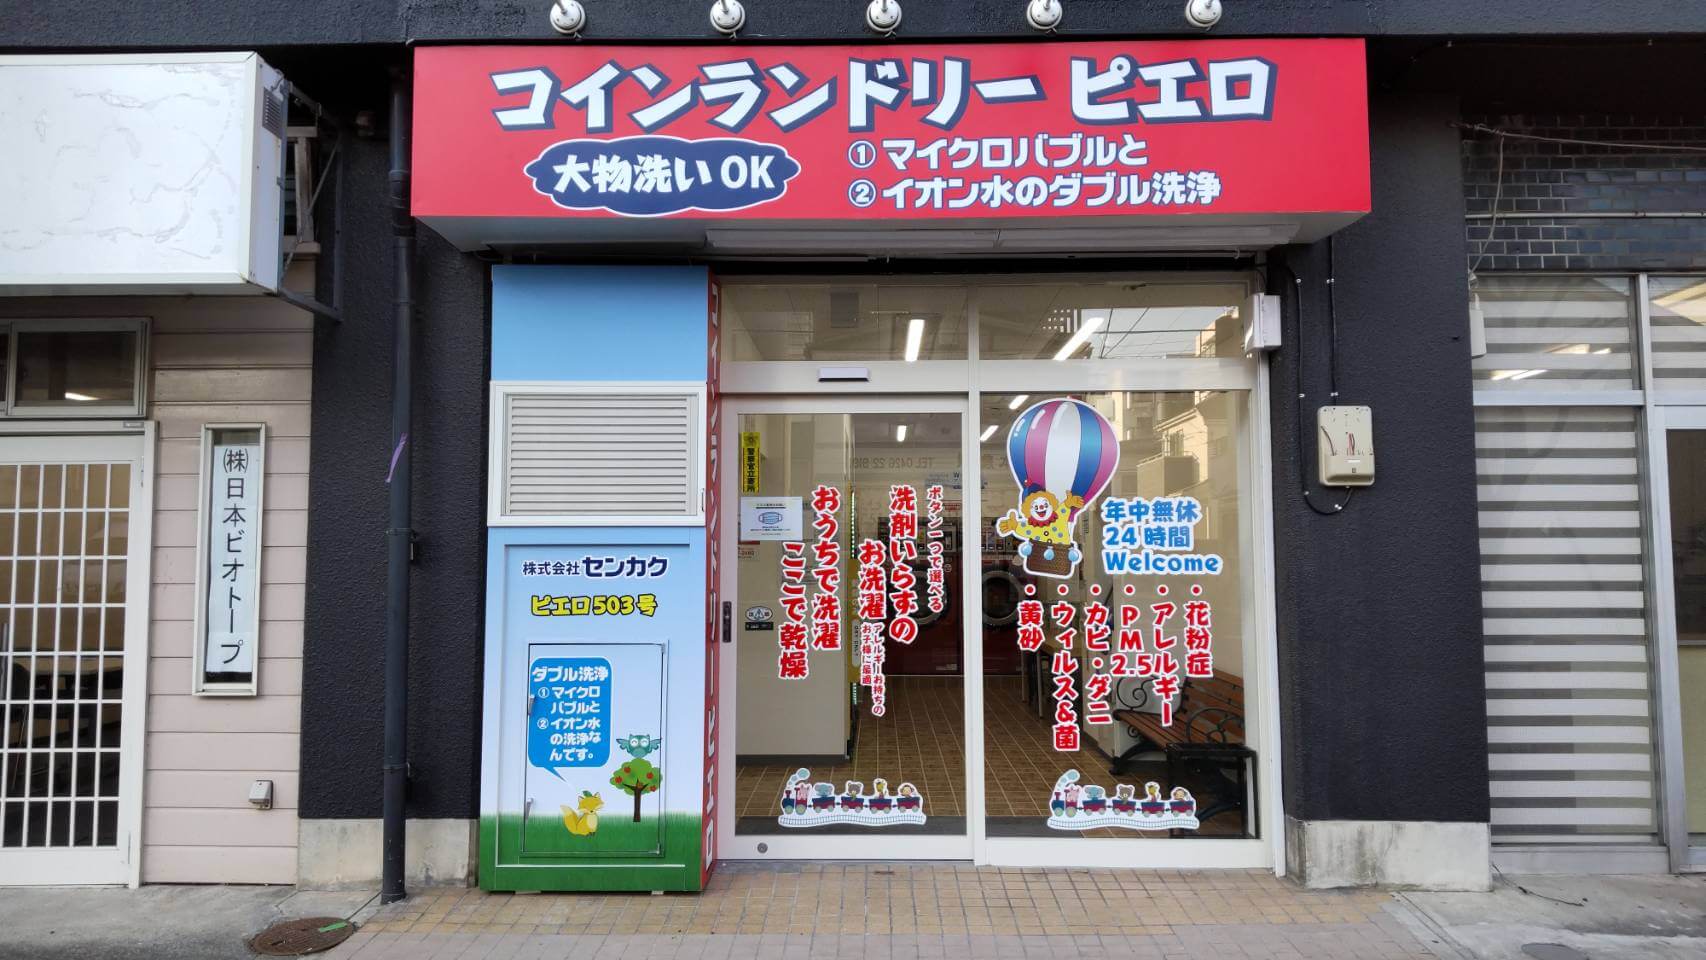 コインランドリー/ピエロ 503号 八王子本町店の写真